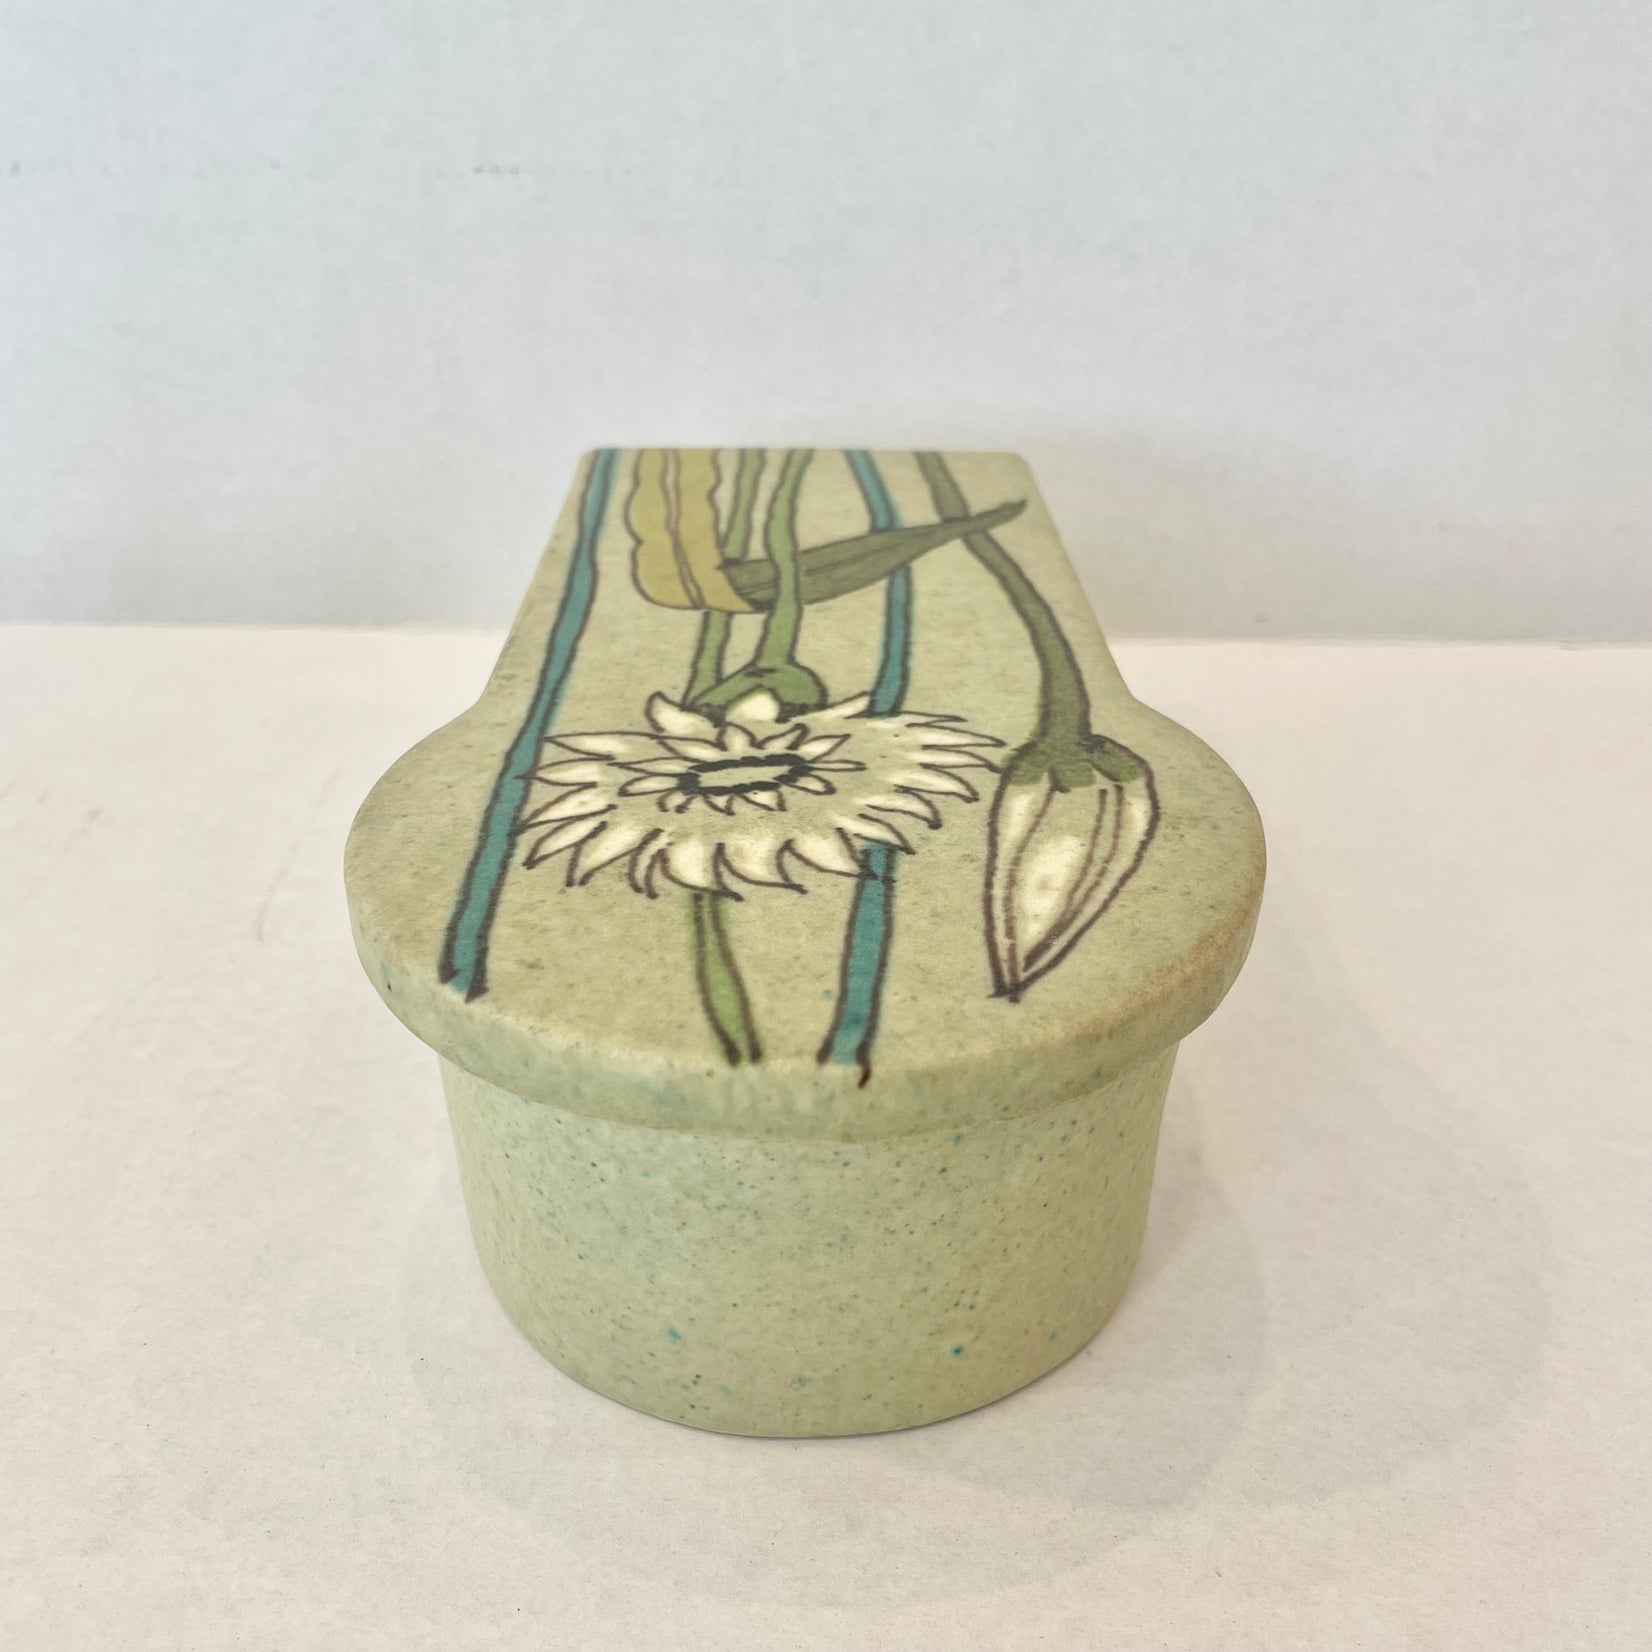 Ceramic Stashbox and Ashtray by Raymor, Italy 1960s